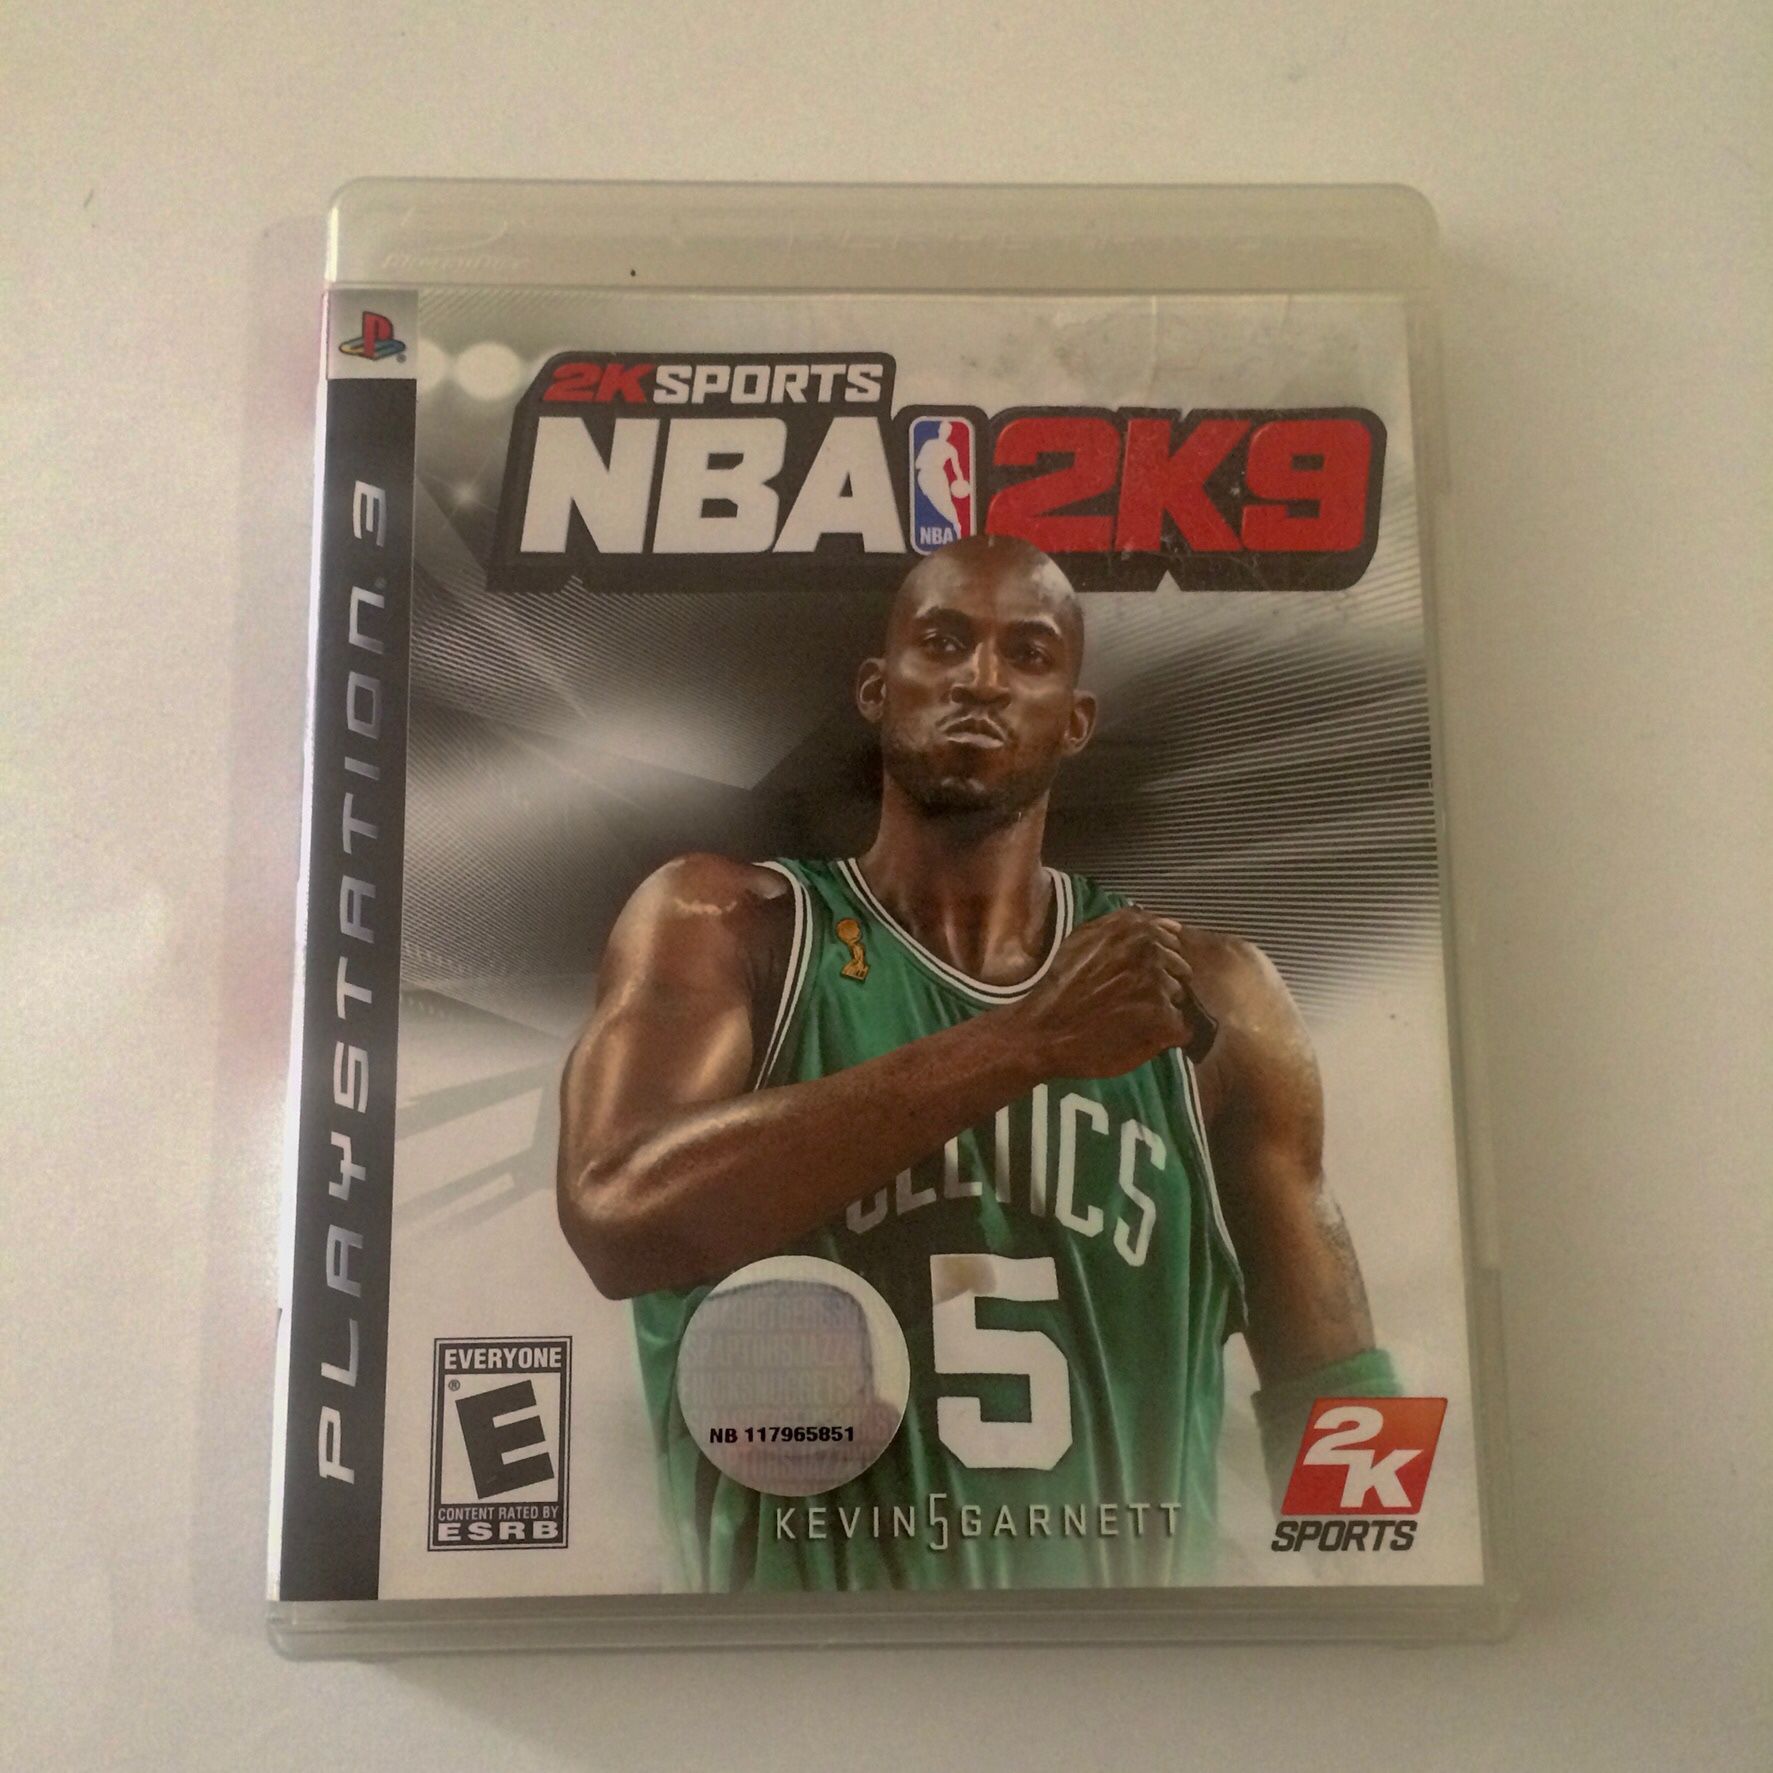 PS3 NBA 2K9